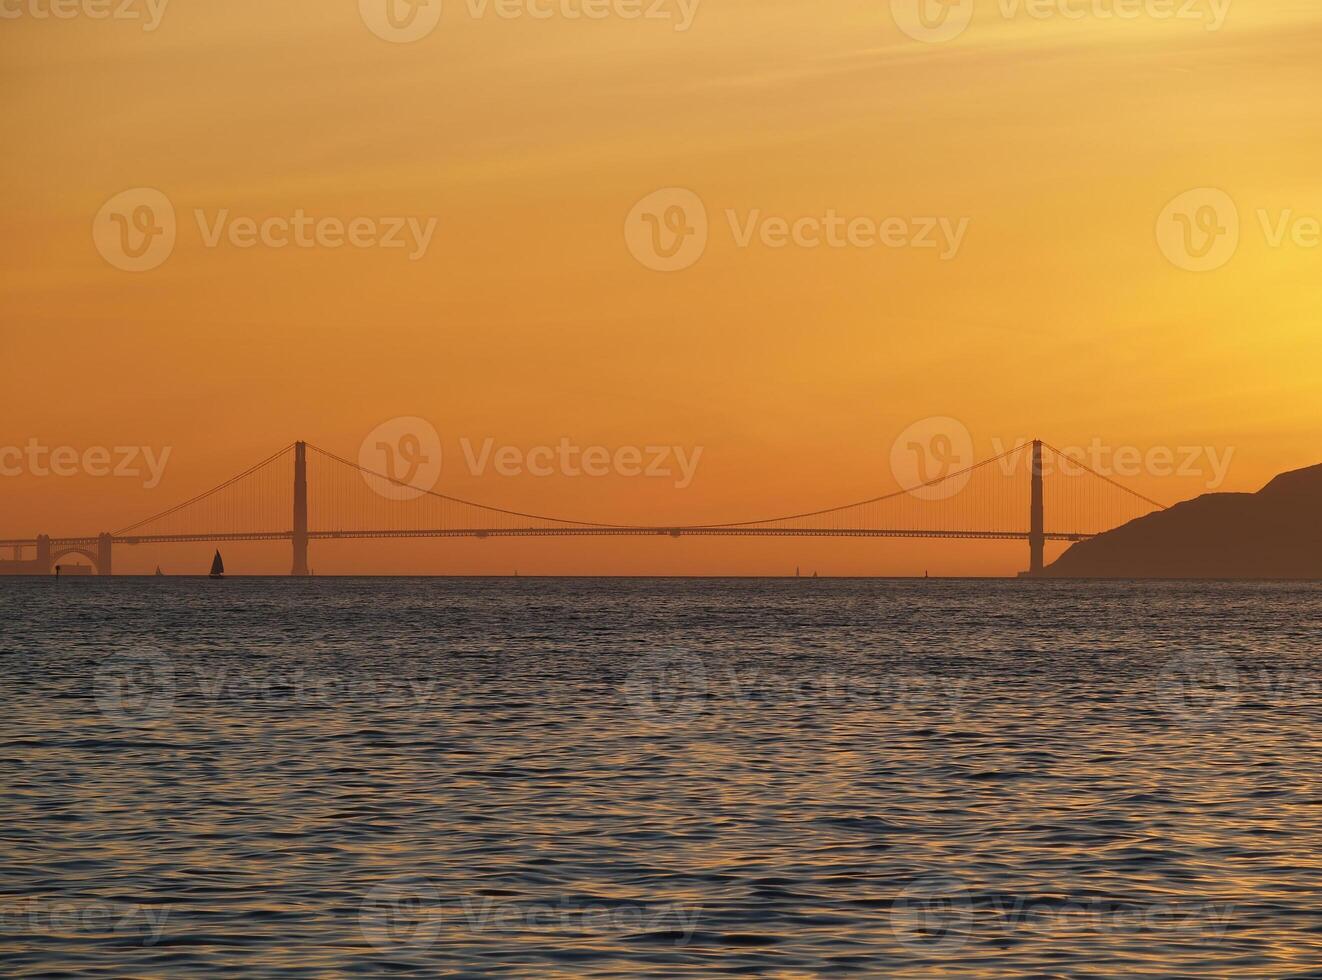 distante ver de dorado portón puente con naranja puesta de sol cielo foto